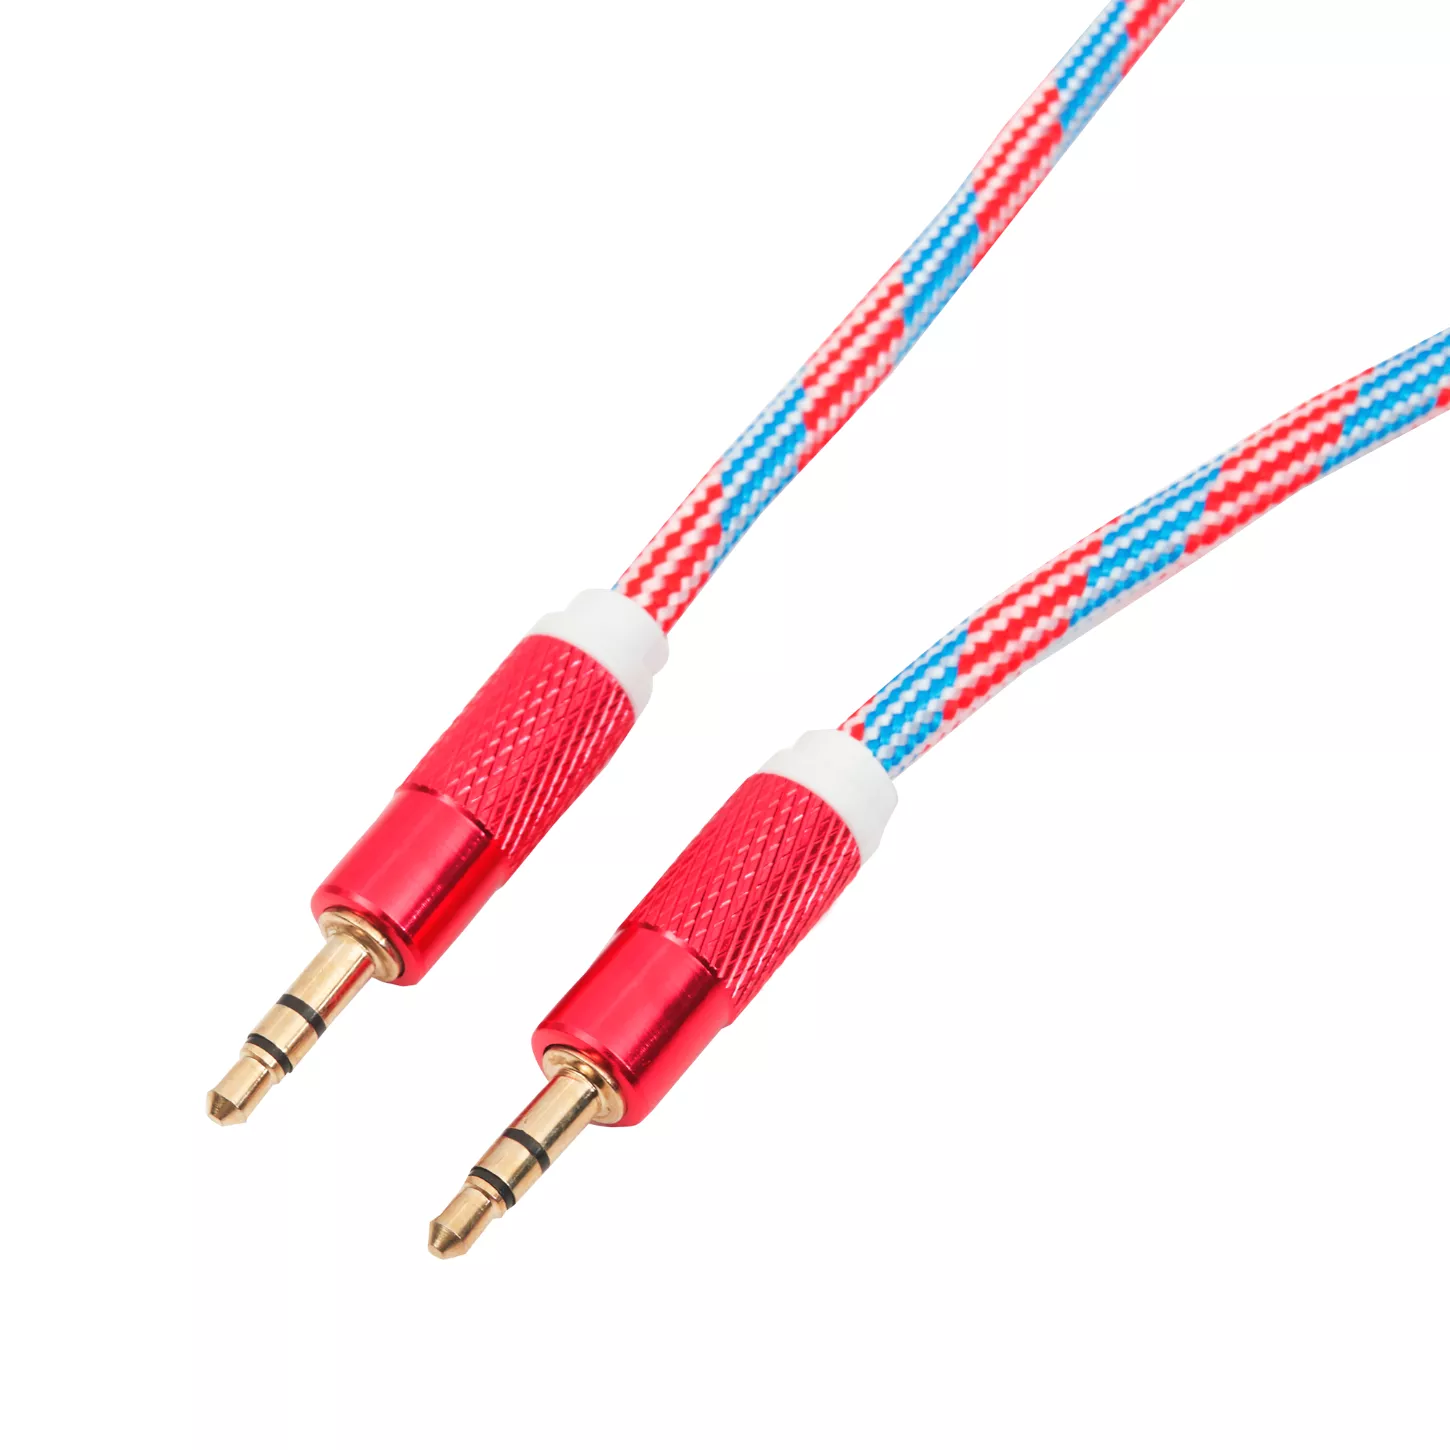 Cable largo auxiliar CELL & PRO macho de 3.5 mm